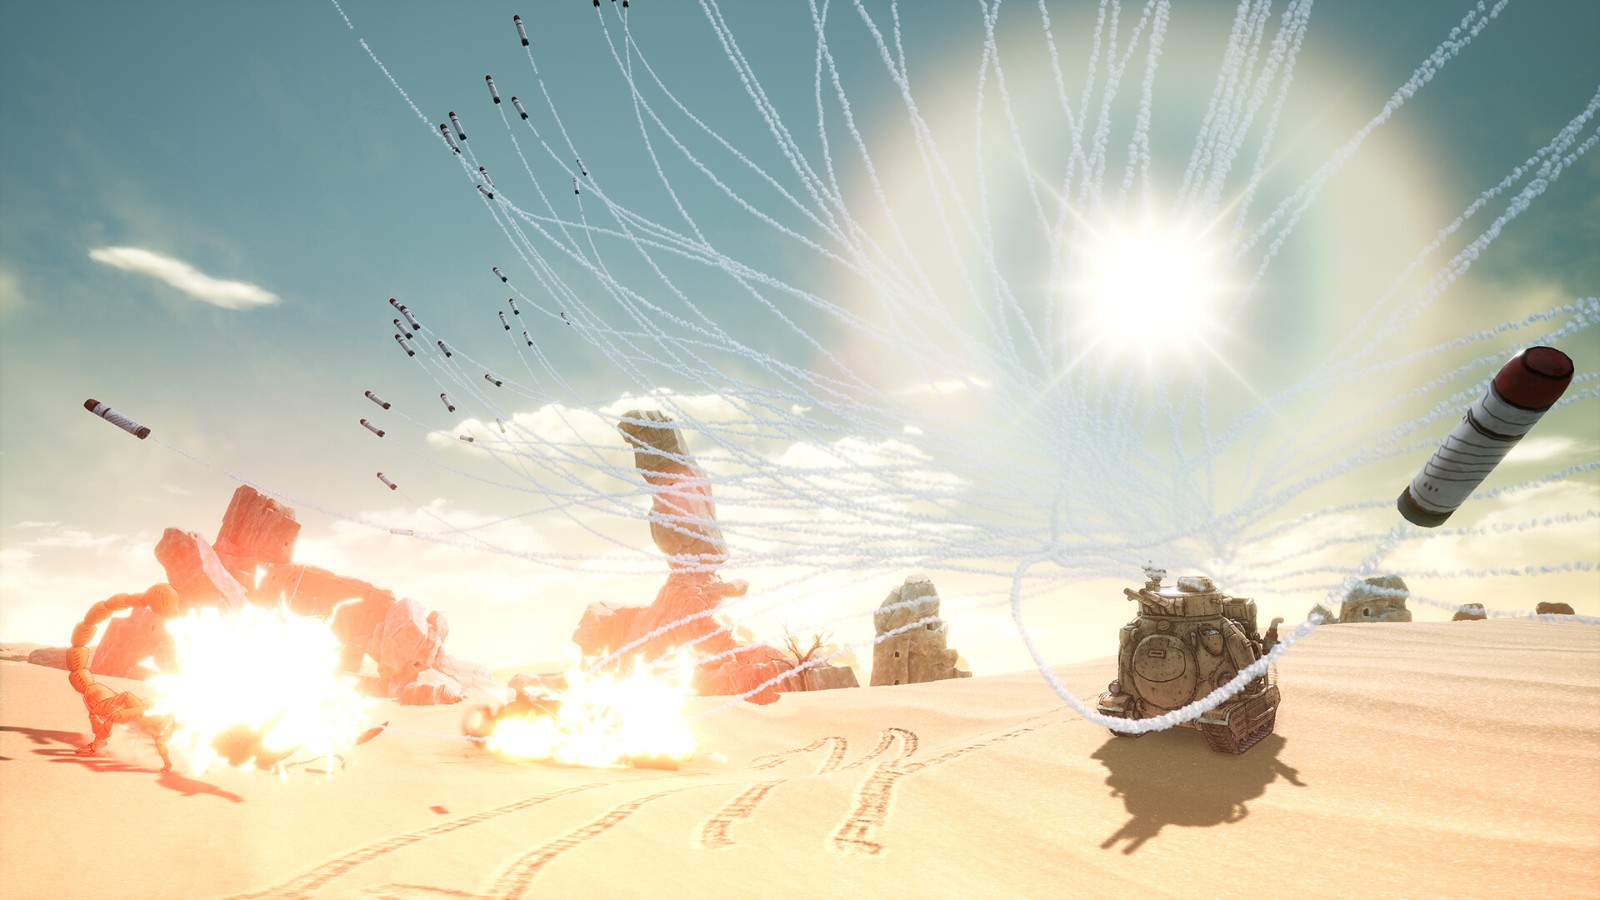 《沙漠大冒险》九分钟概述预告 4月26日正式发售